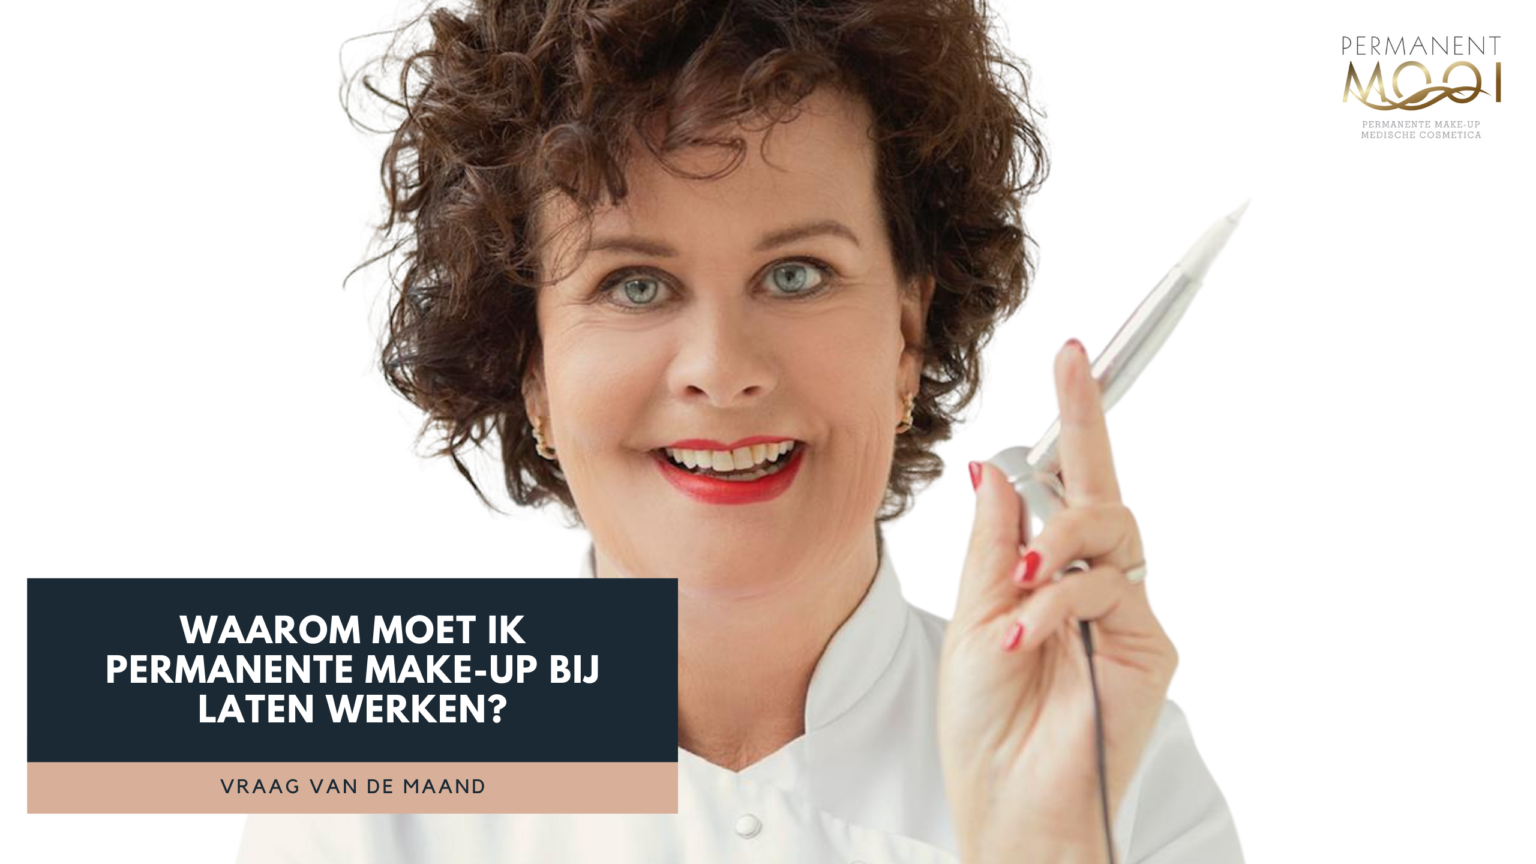 Dit is een video over waarom je permanente make-up zou kiezen - Janny Hanegraaf Permanent Mooi